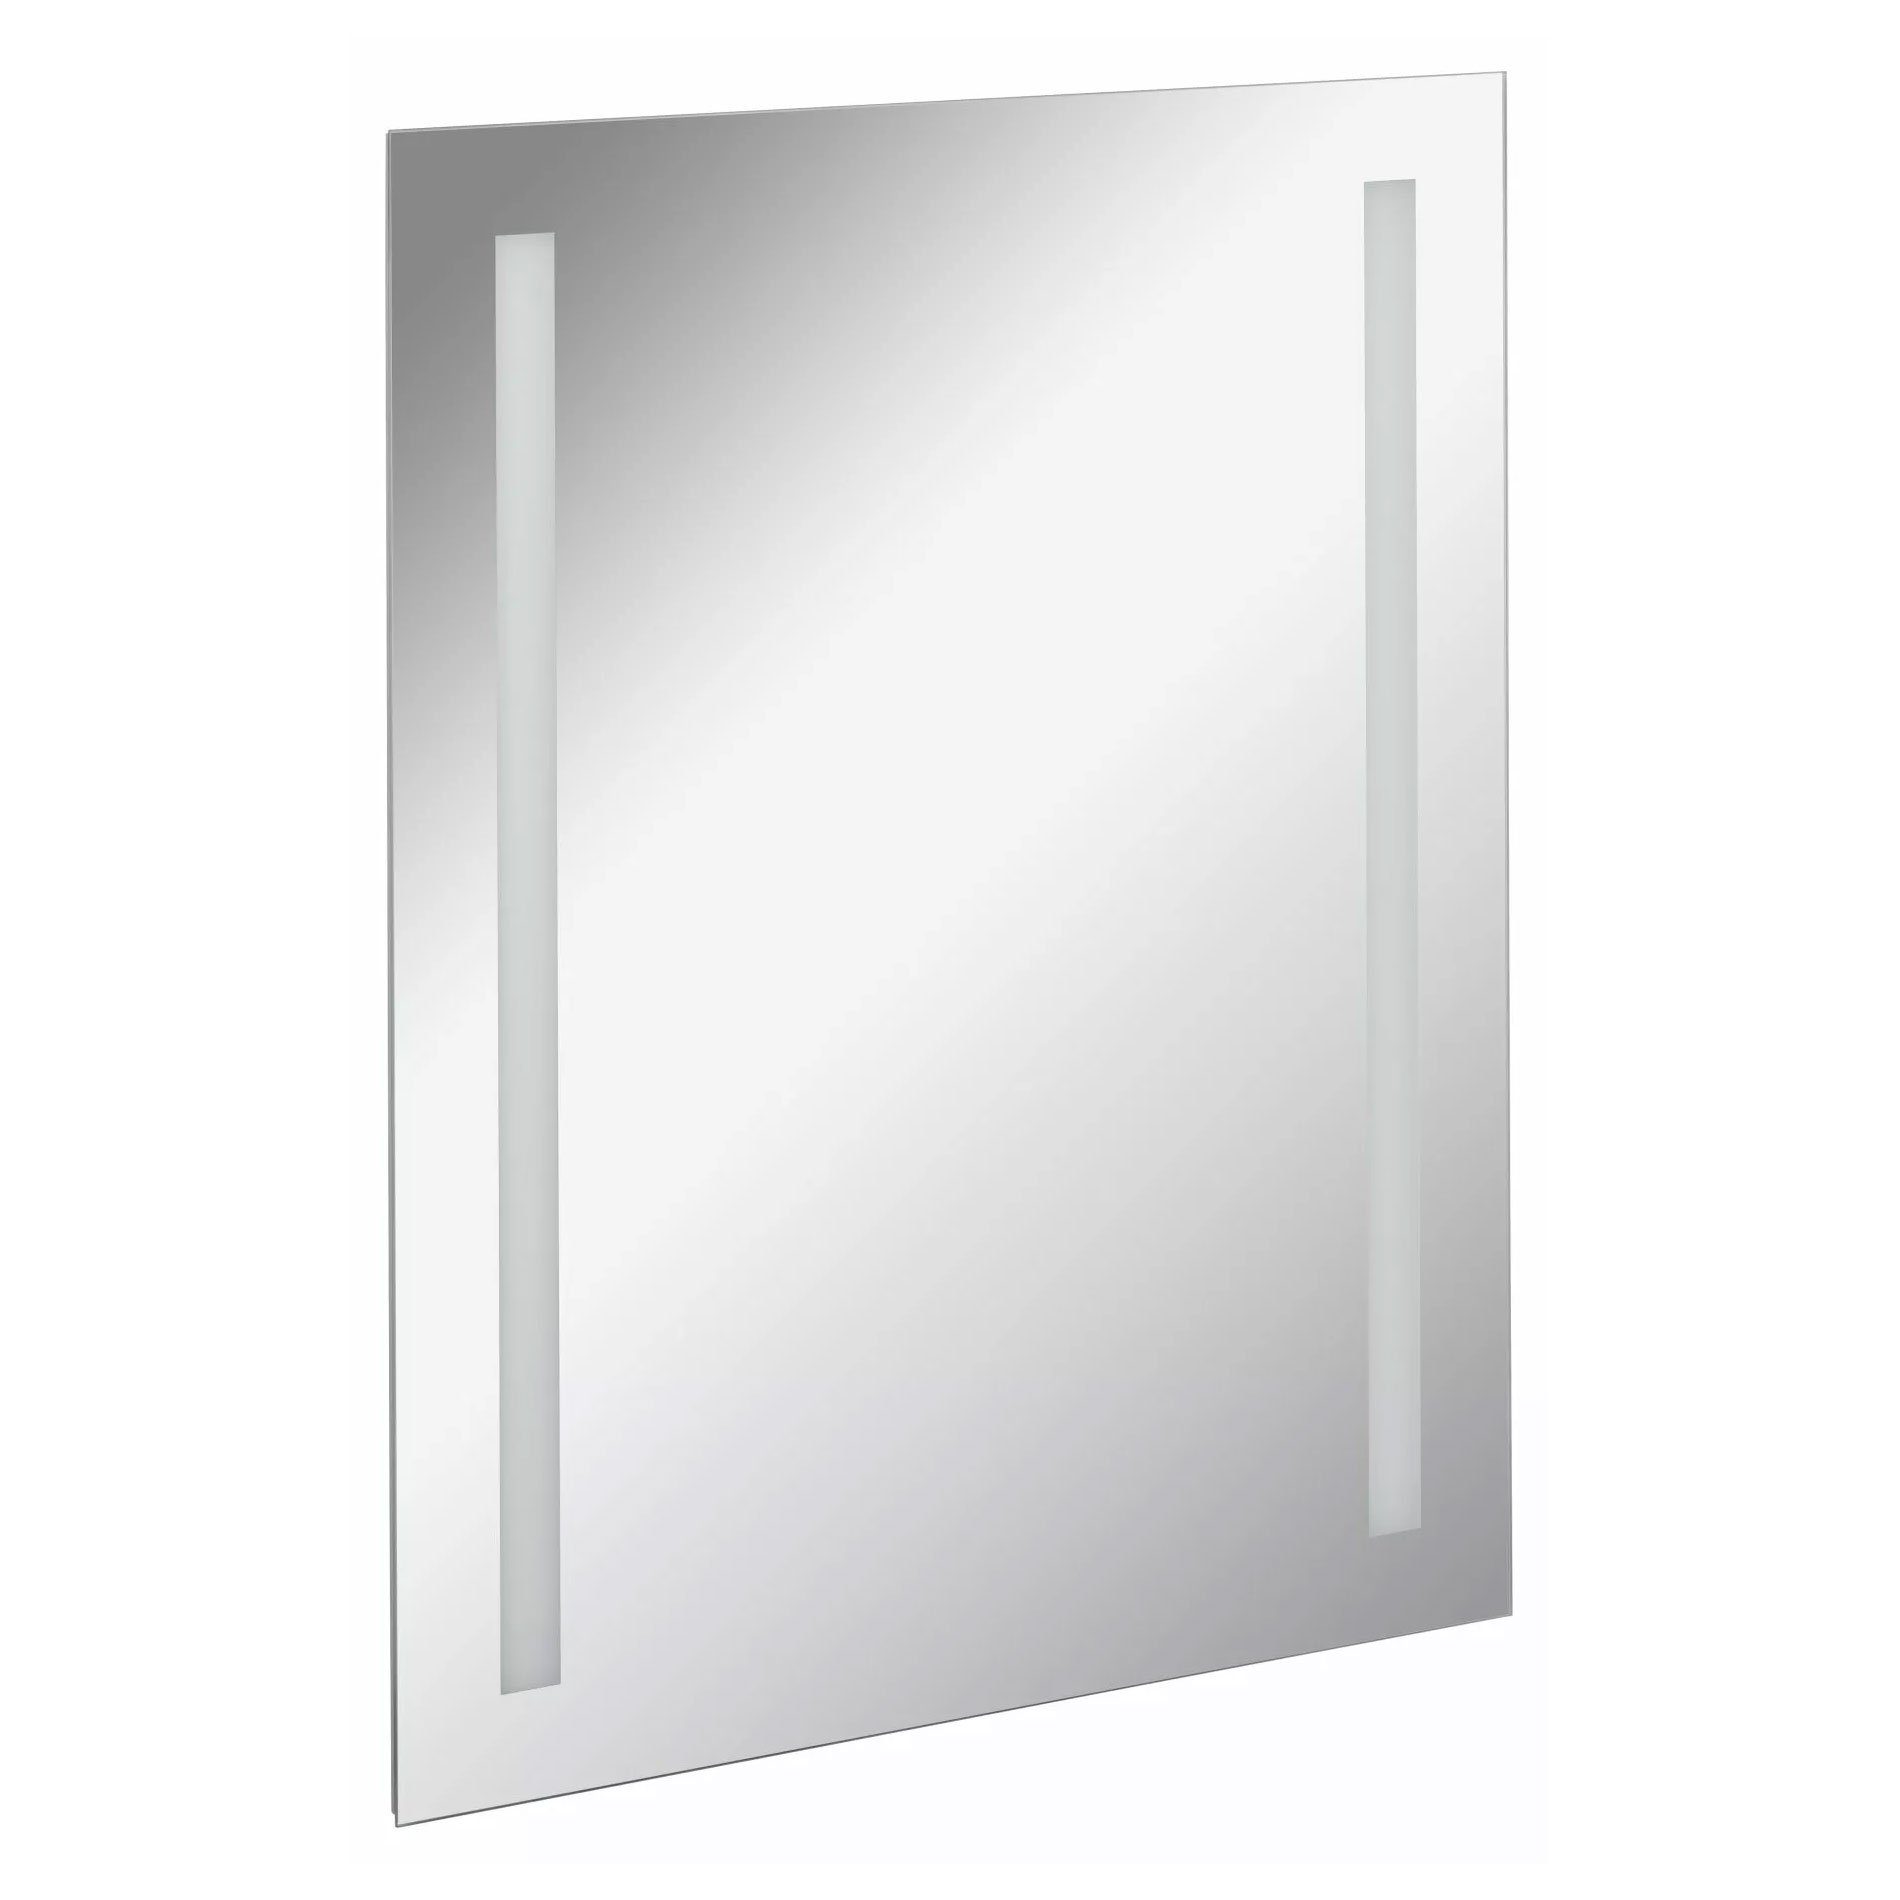 FACKELMANN Badspiegel Spiegelelement Linear - 60cm - mit Ambientebeleuchtung